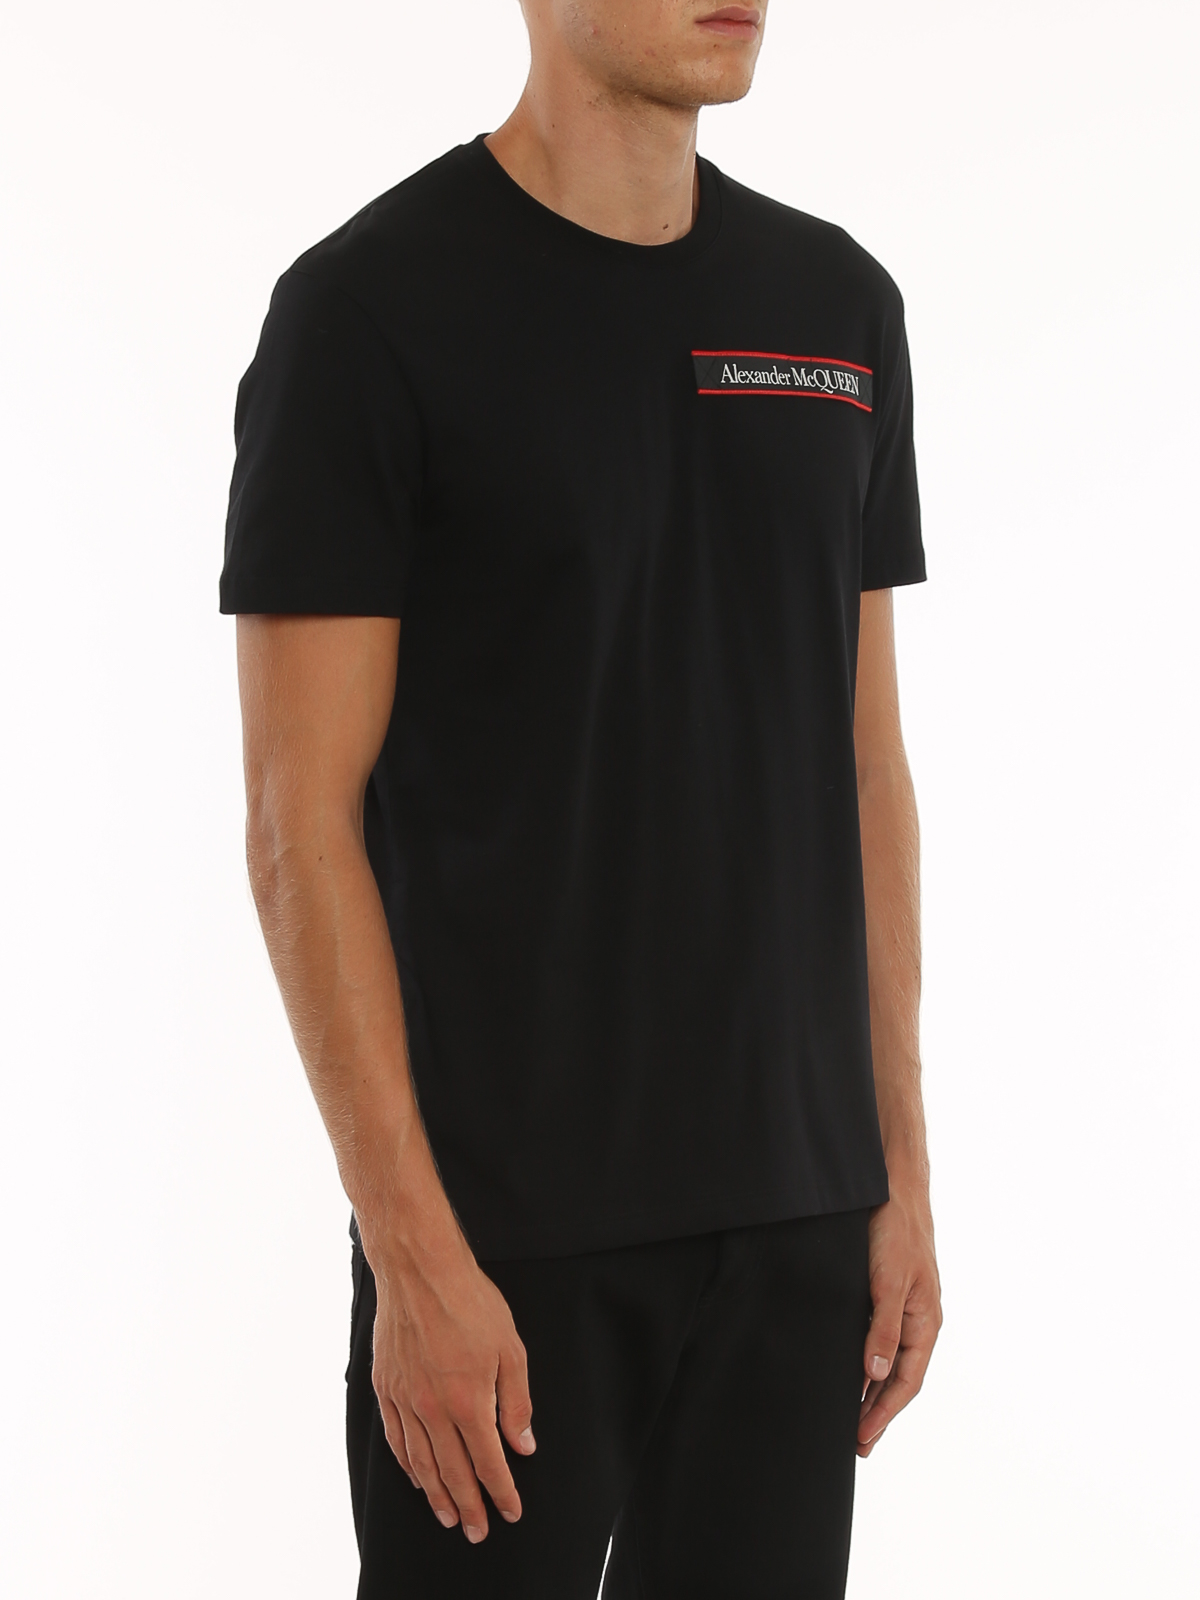 Tシャツ Alexander Mcqueen - Tシャツ - 黒 - 642662QRX740901